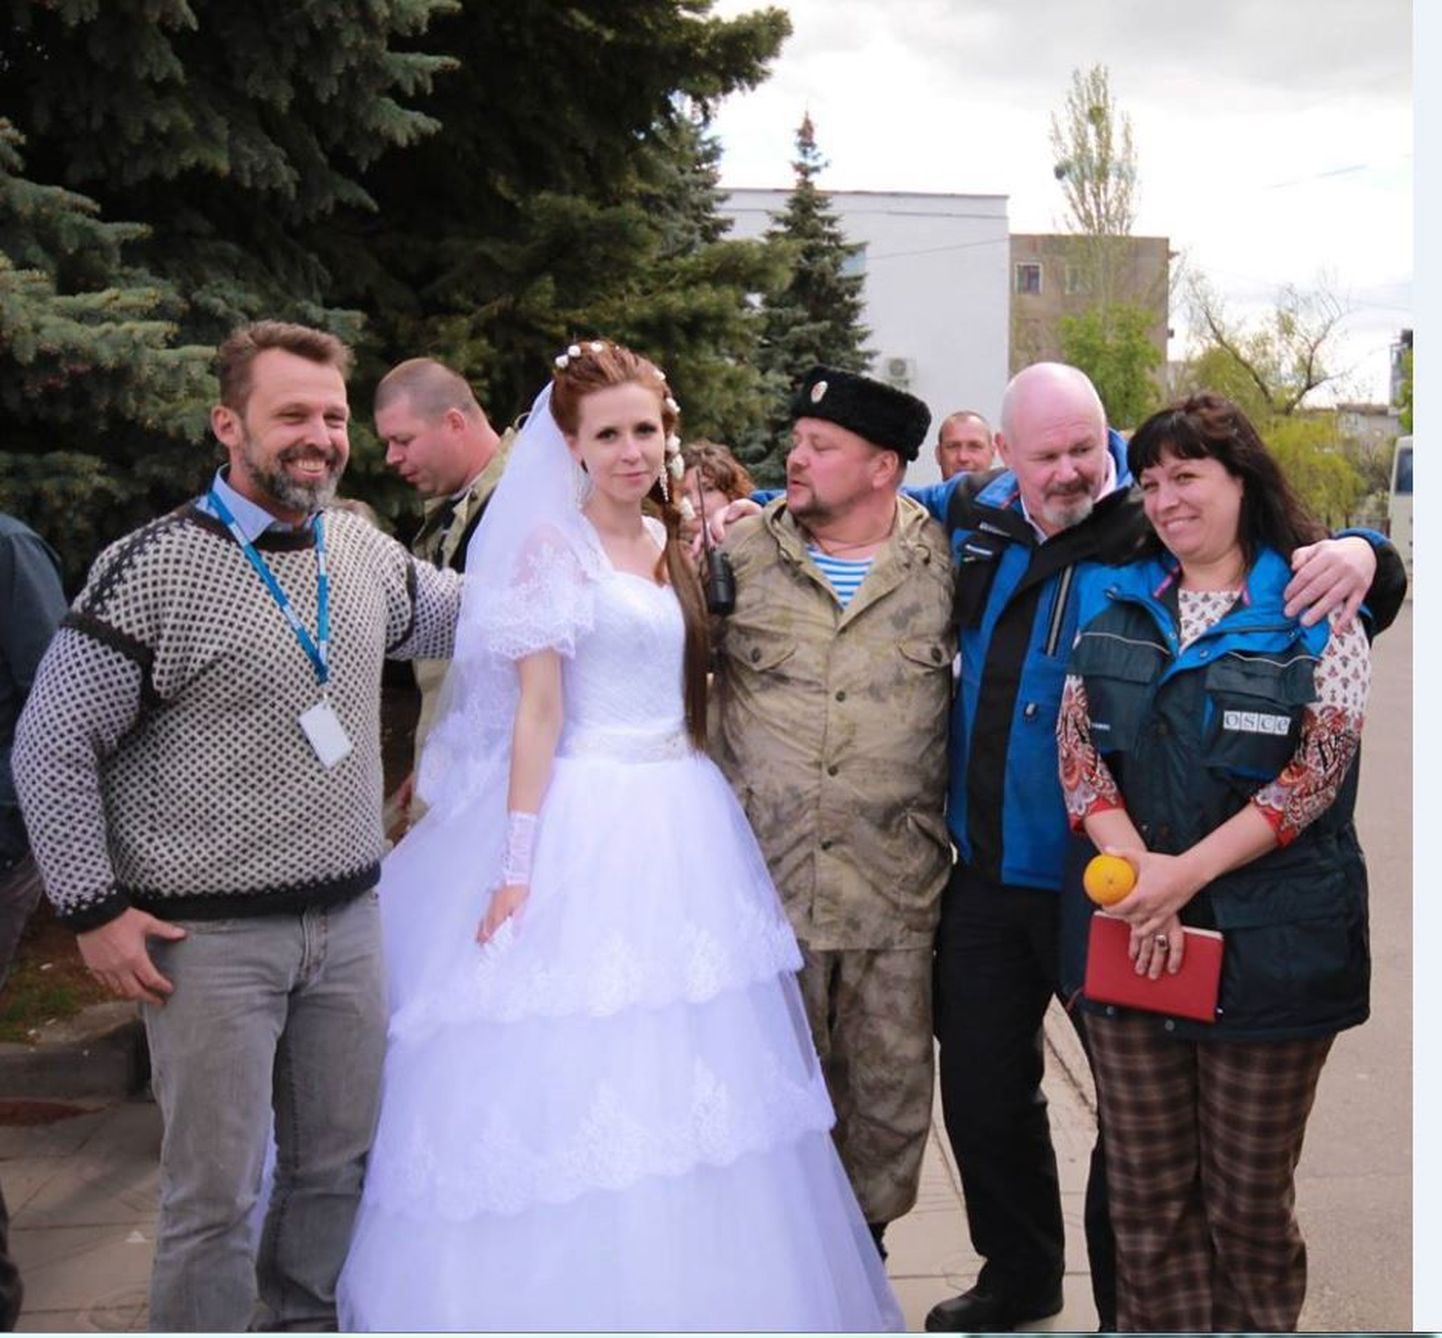 OSCE vaatleja (vasakul) pulmalistega poseerimas.